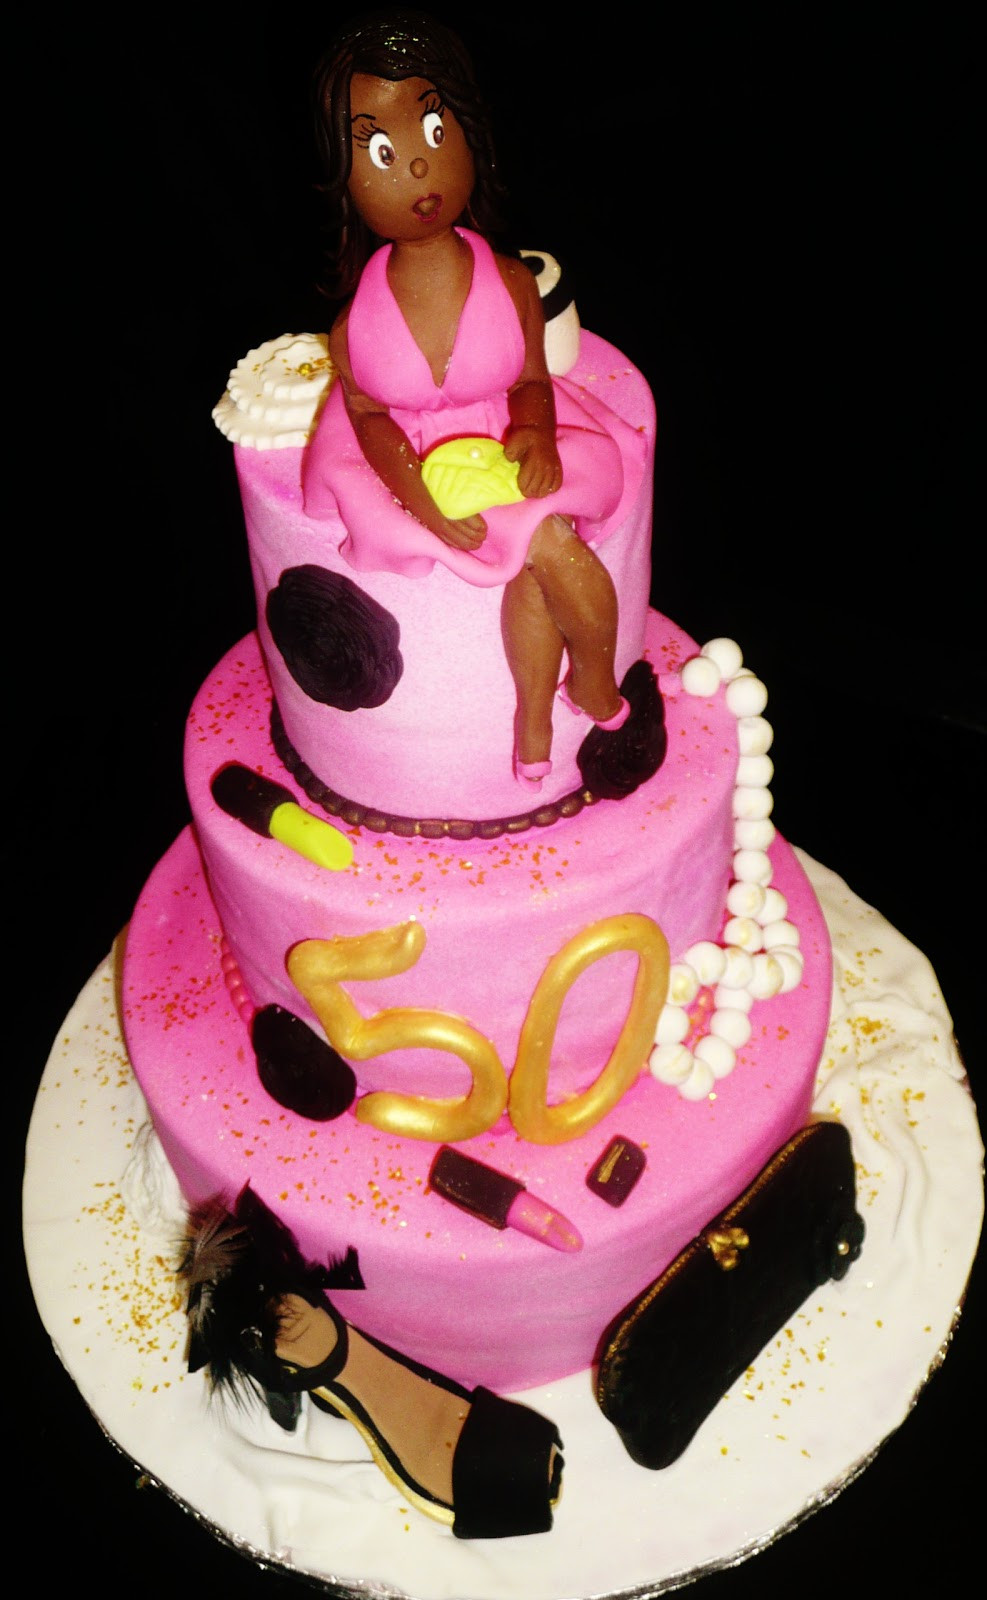 Diva Birthday Cakes
 Baking with Roxana s Cakes 50th Birthday Cake "Diva themed"